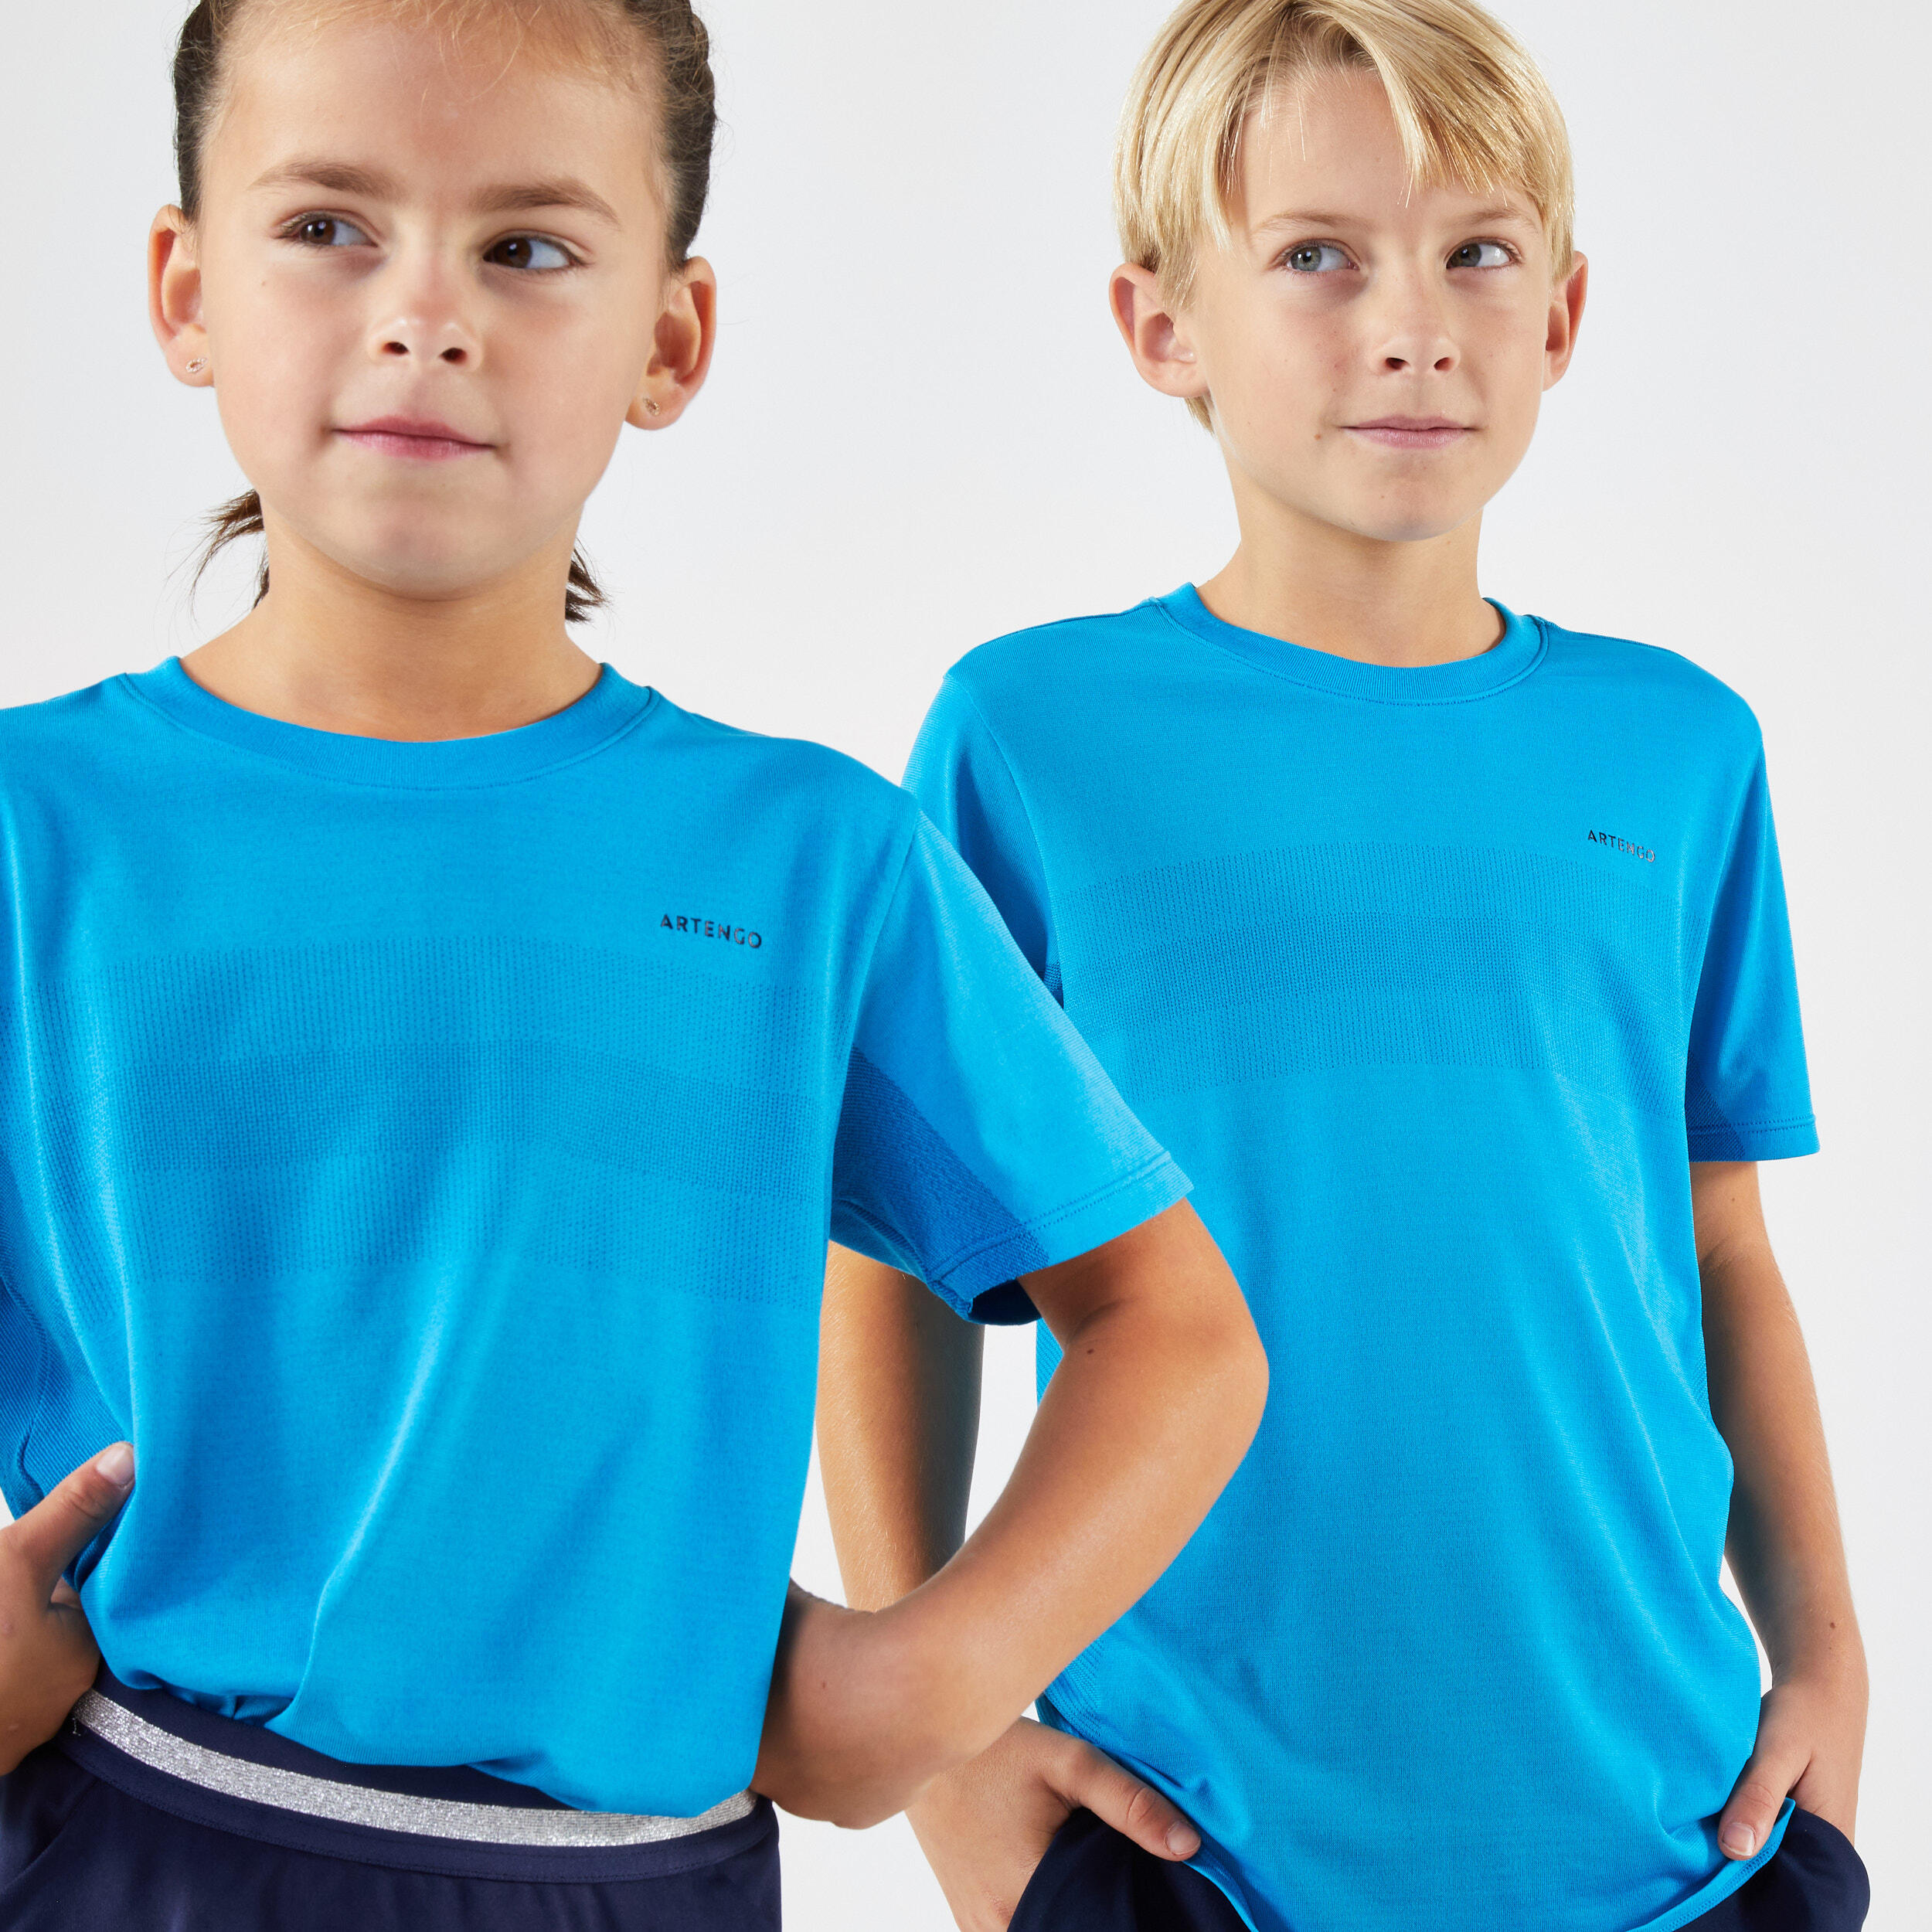 ARTENGO Kids' Tennis T-Shirt - Blue